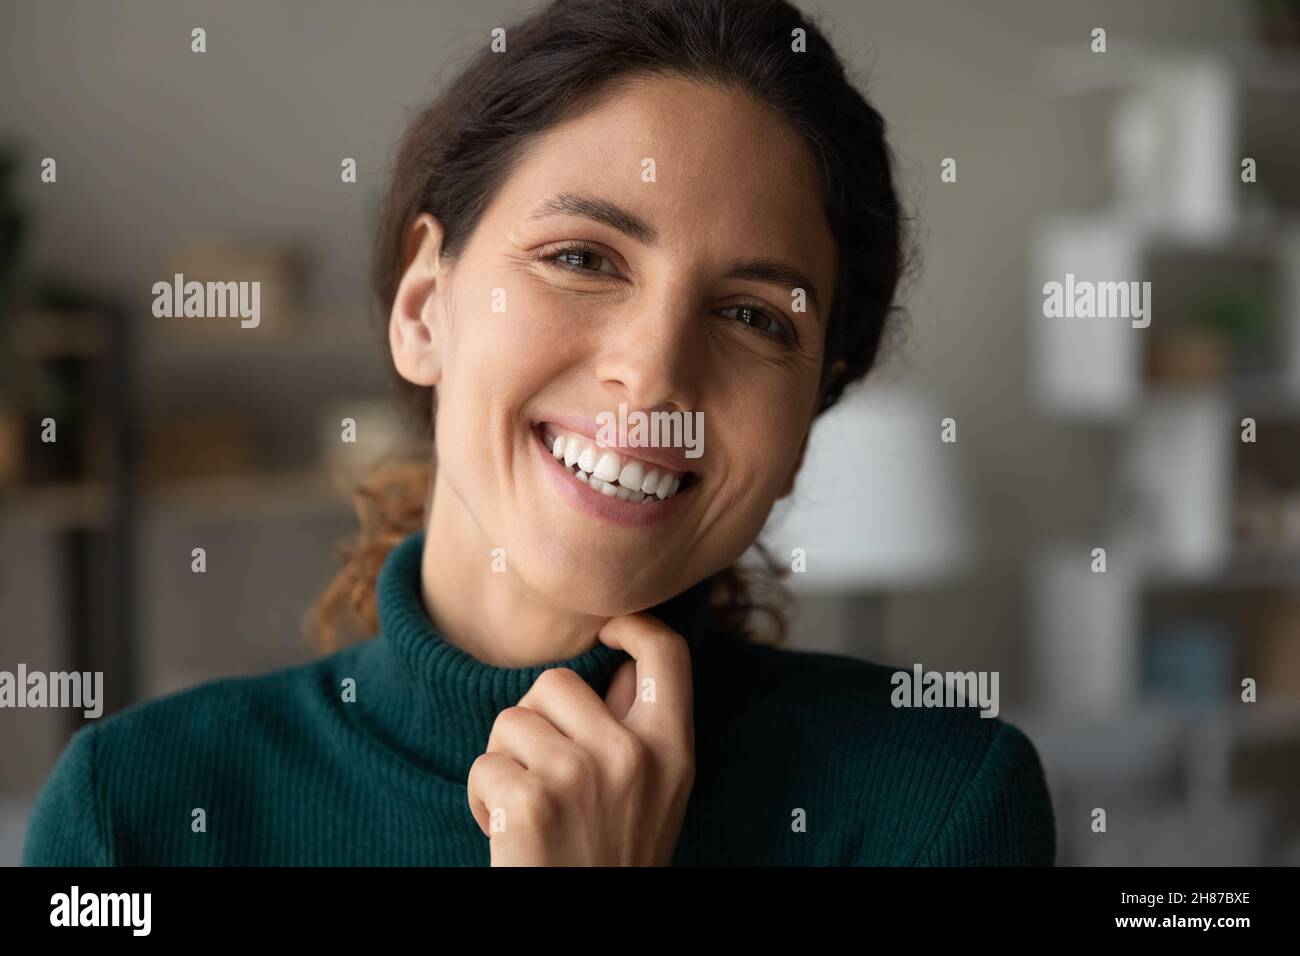 Attraente volto di bruna femminile latina sorridente e positiva Foto Stock